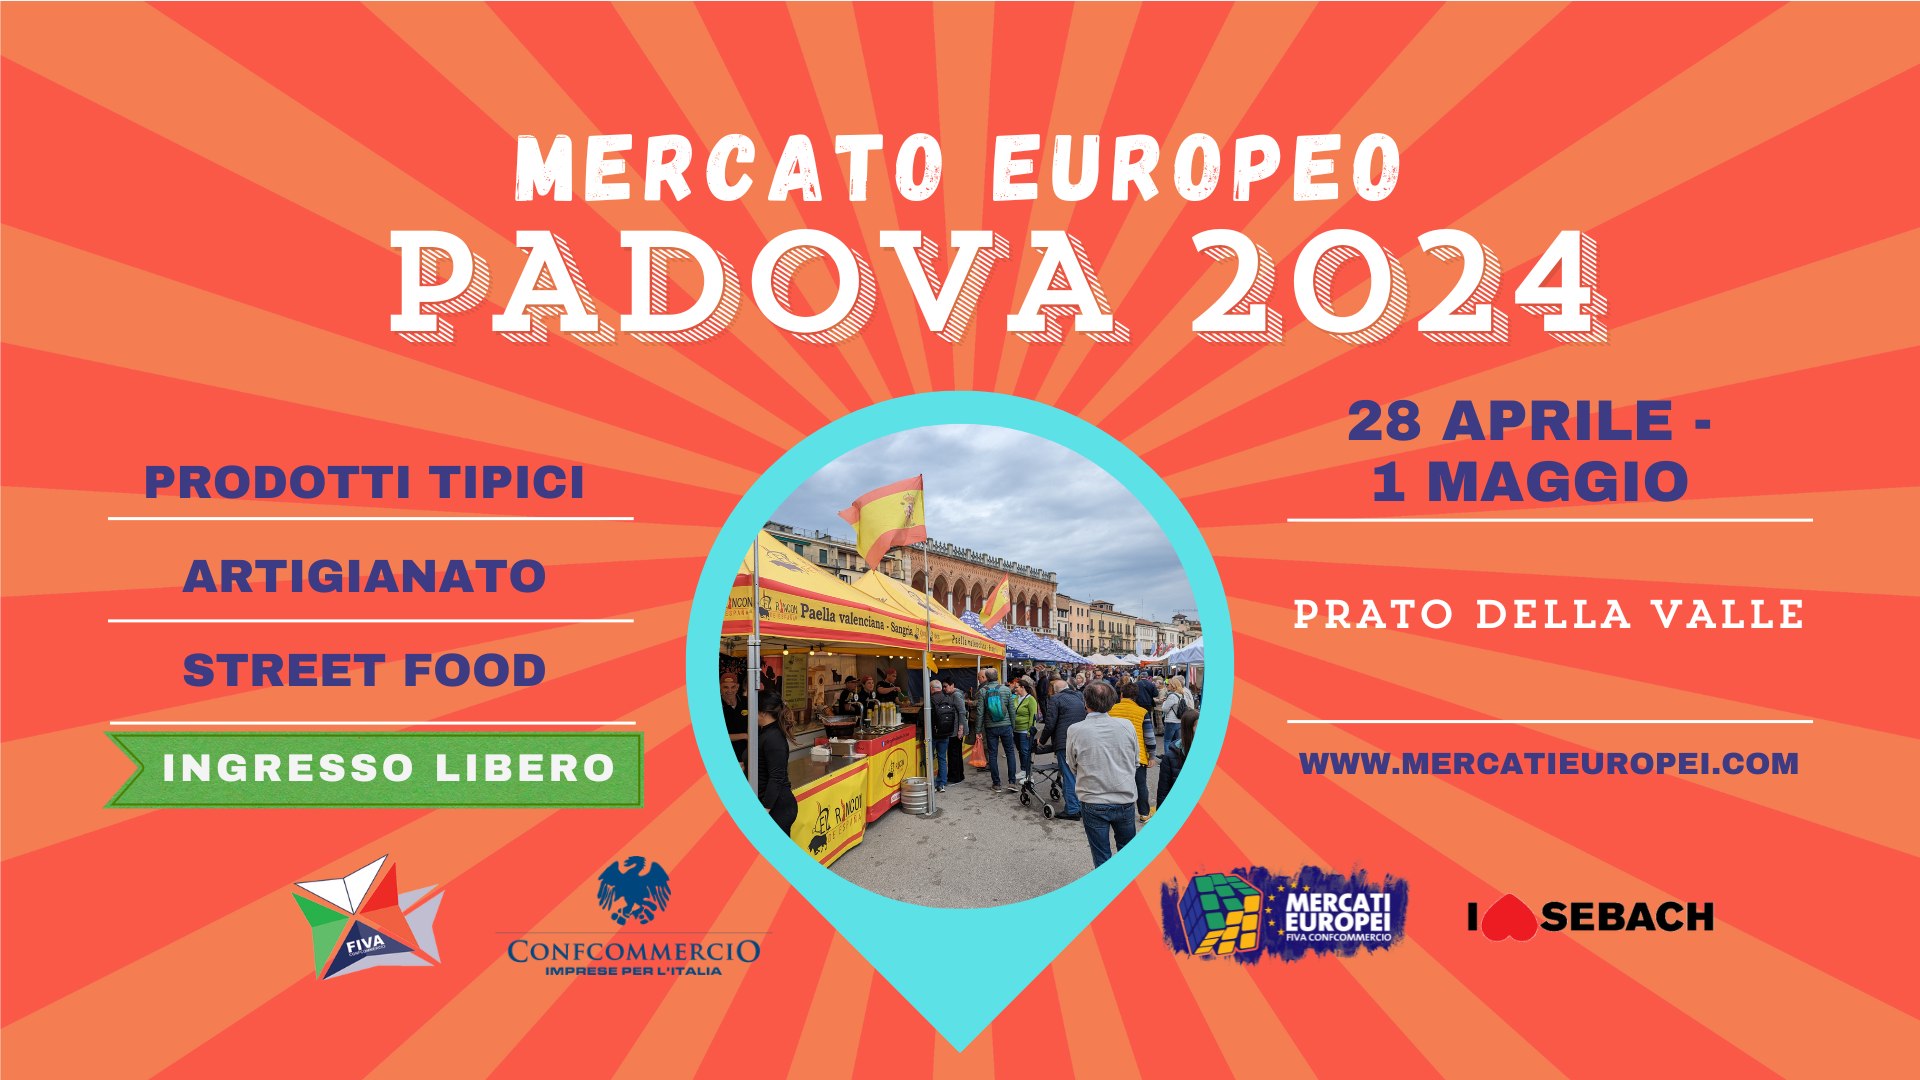 PADOVA, XIX° Mercato Europeo 2024